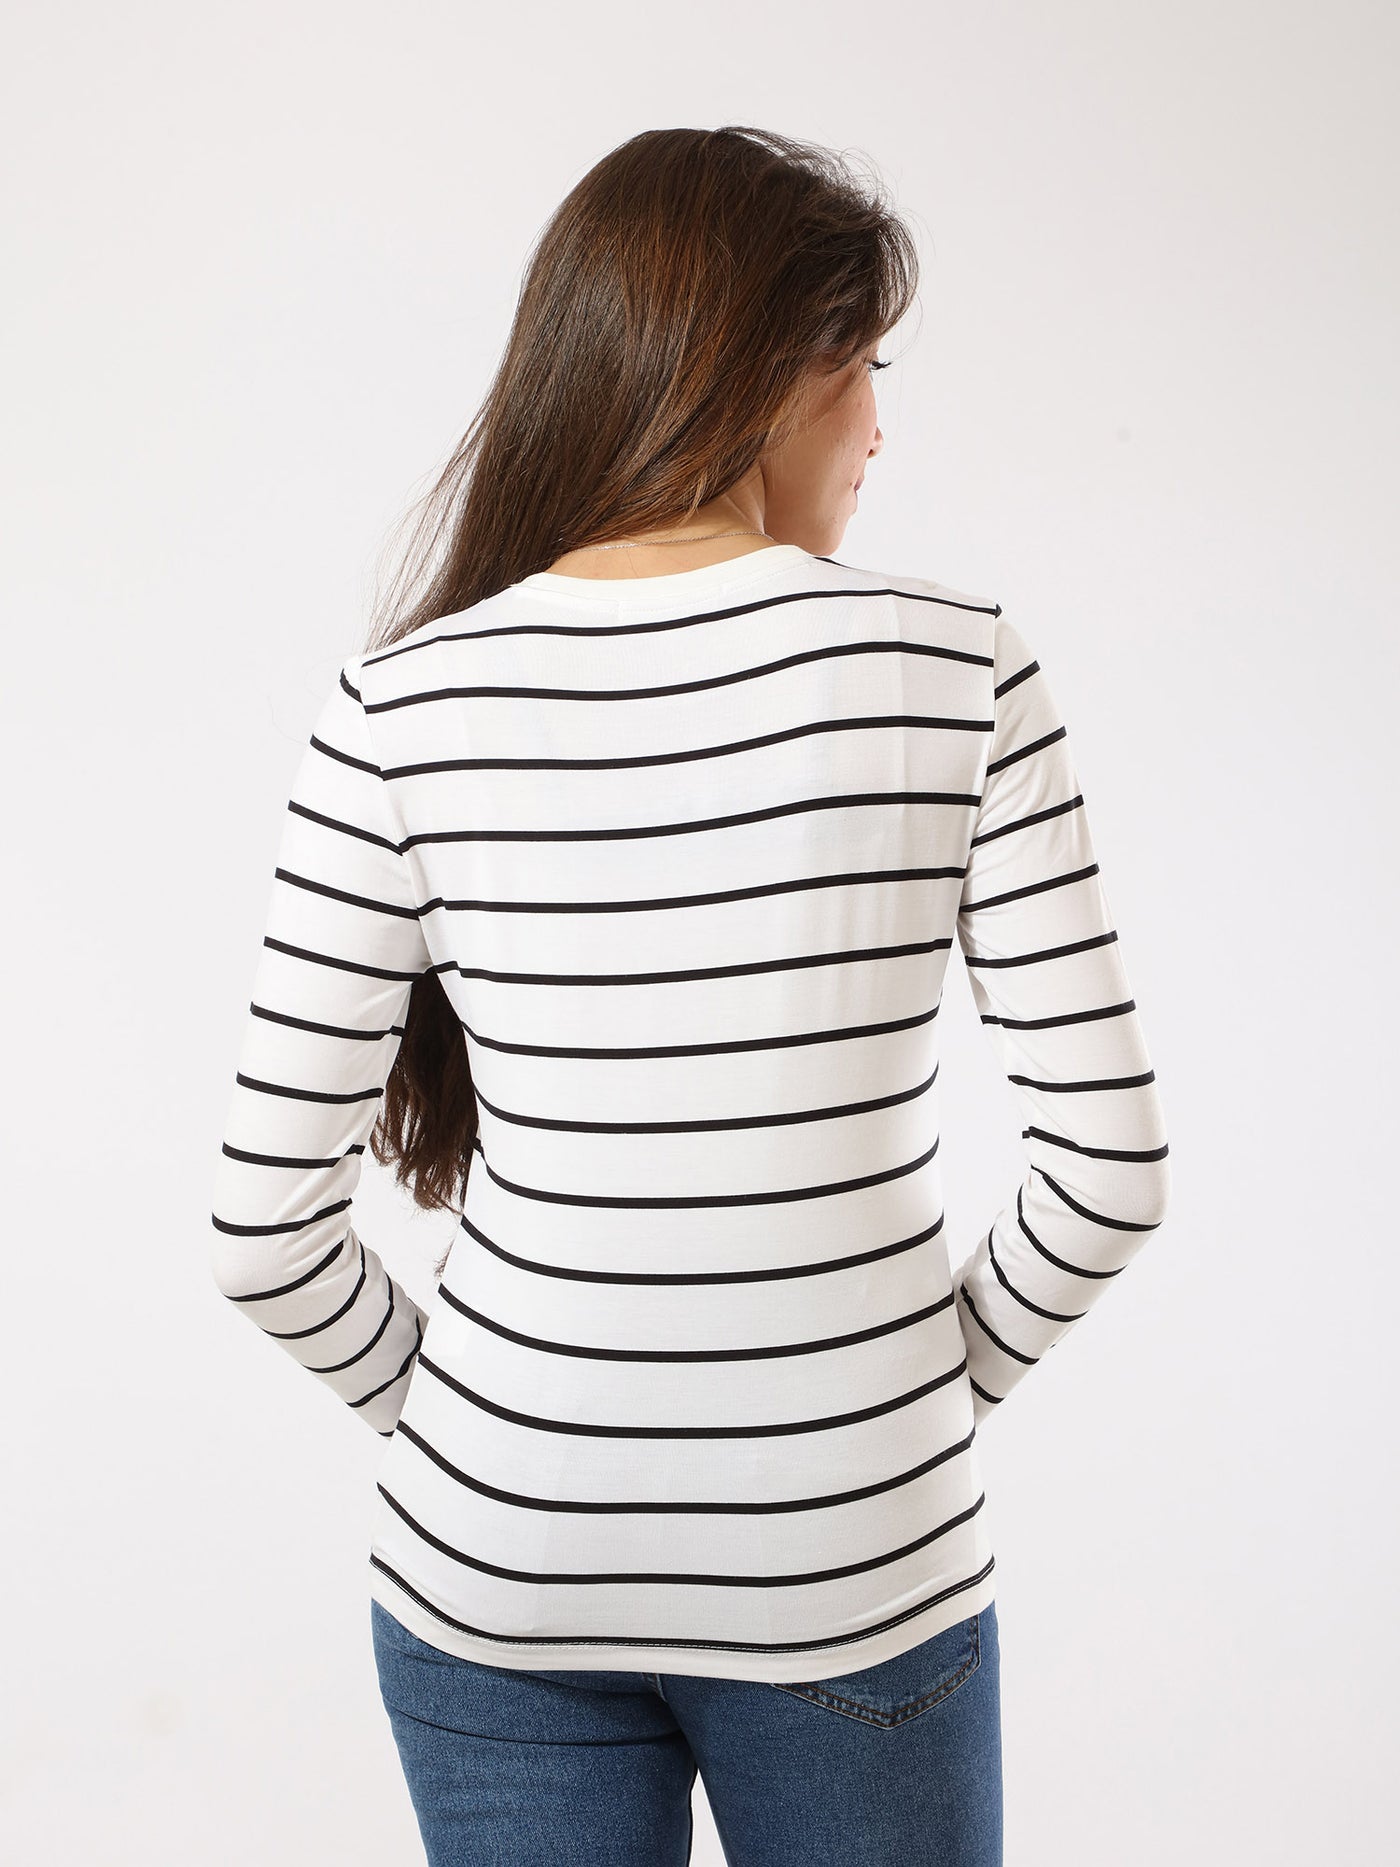 T-Shirt - Stripes - Full Sleeves